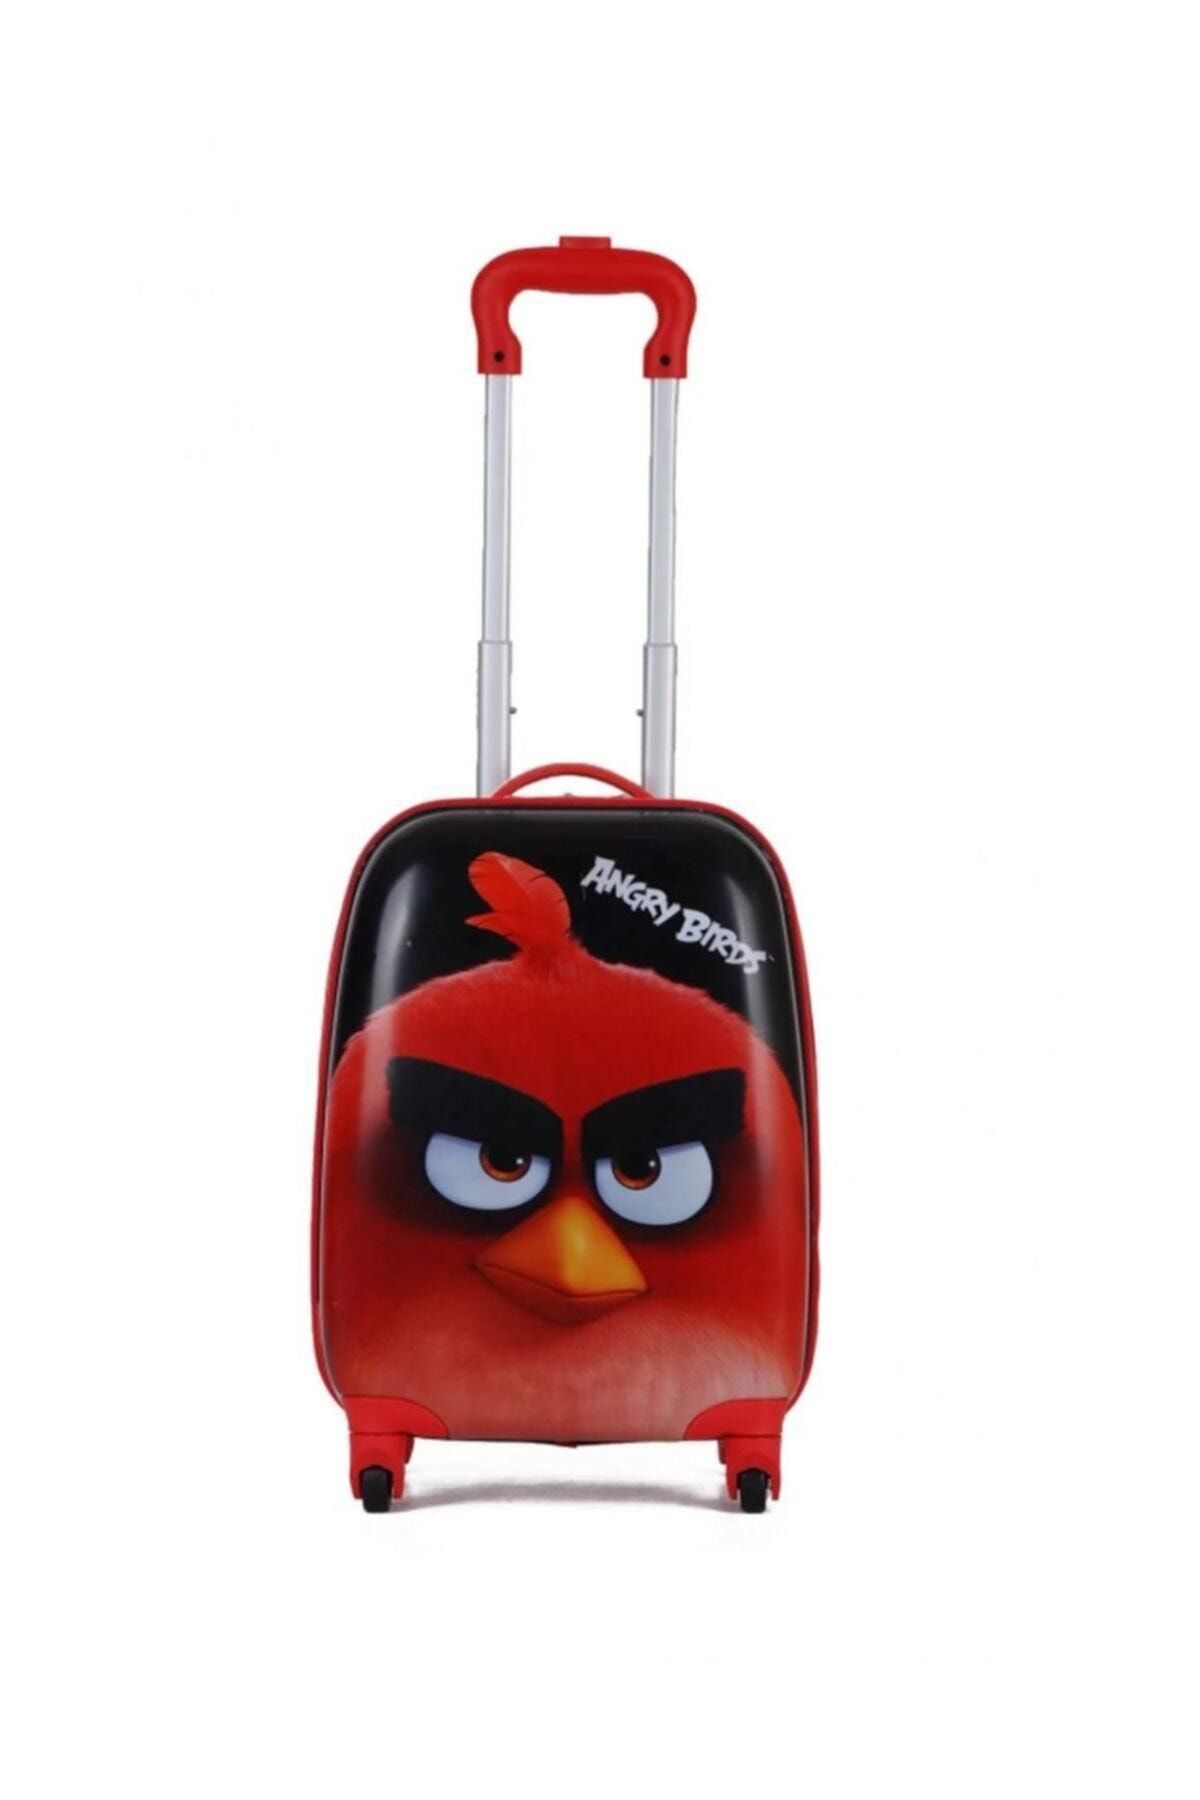 Hakan Çanta Angry Birds Lisanslı 4 Tekerli Ve Çekçekli Çocuk Valizi Siyah Kırmızı